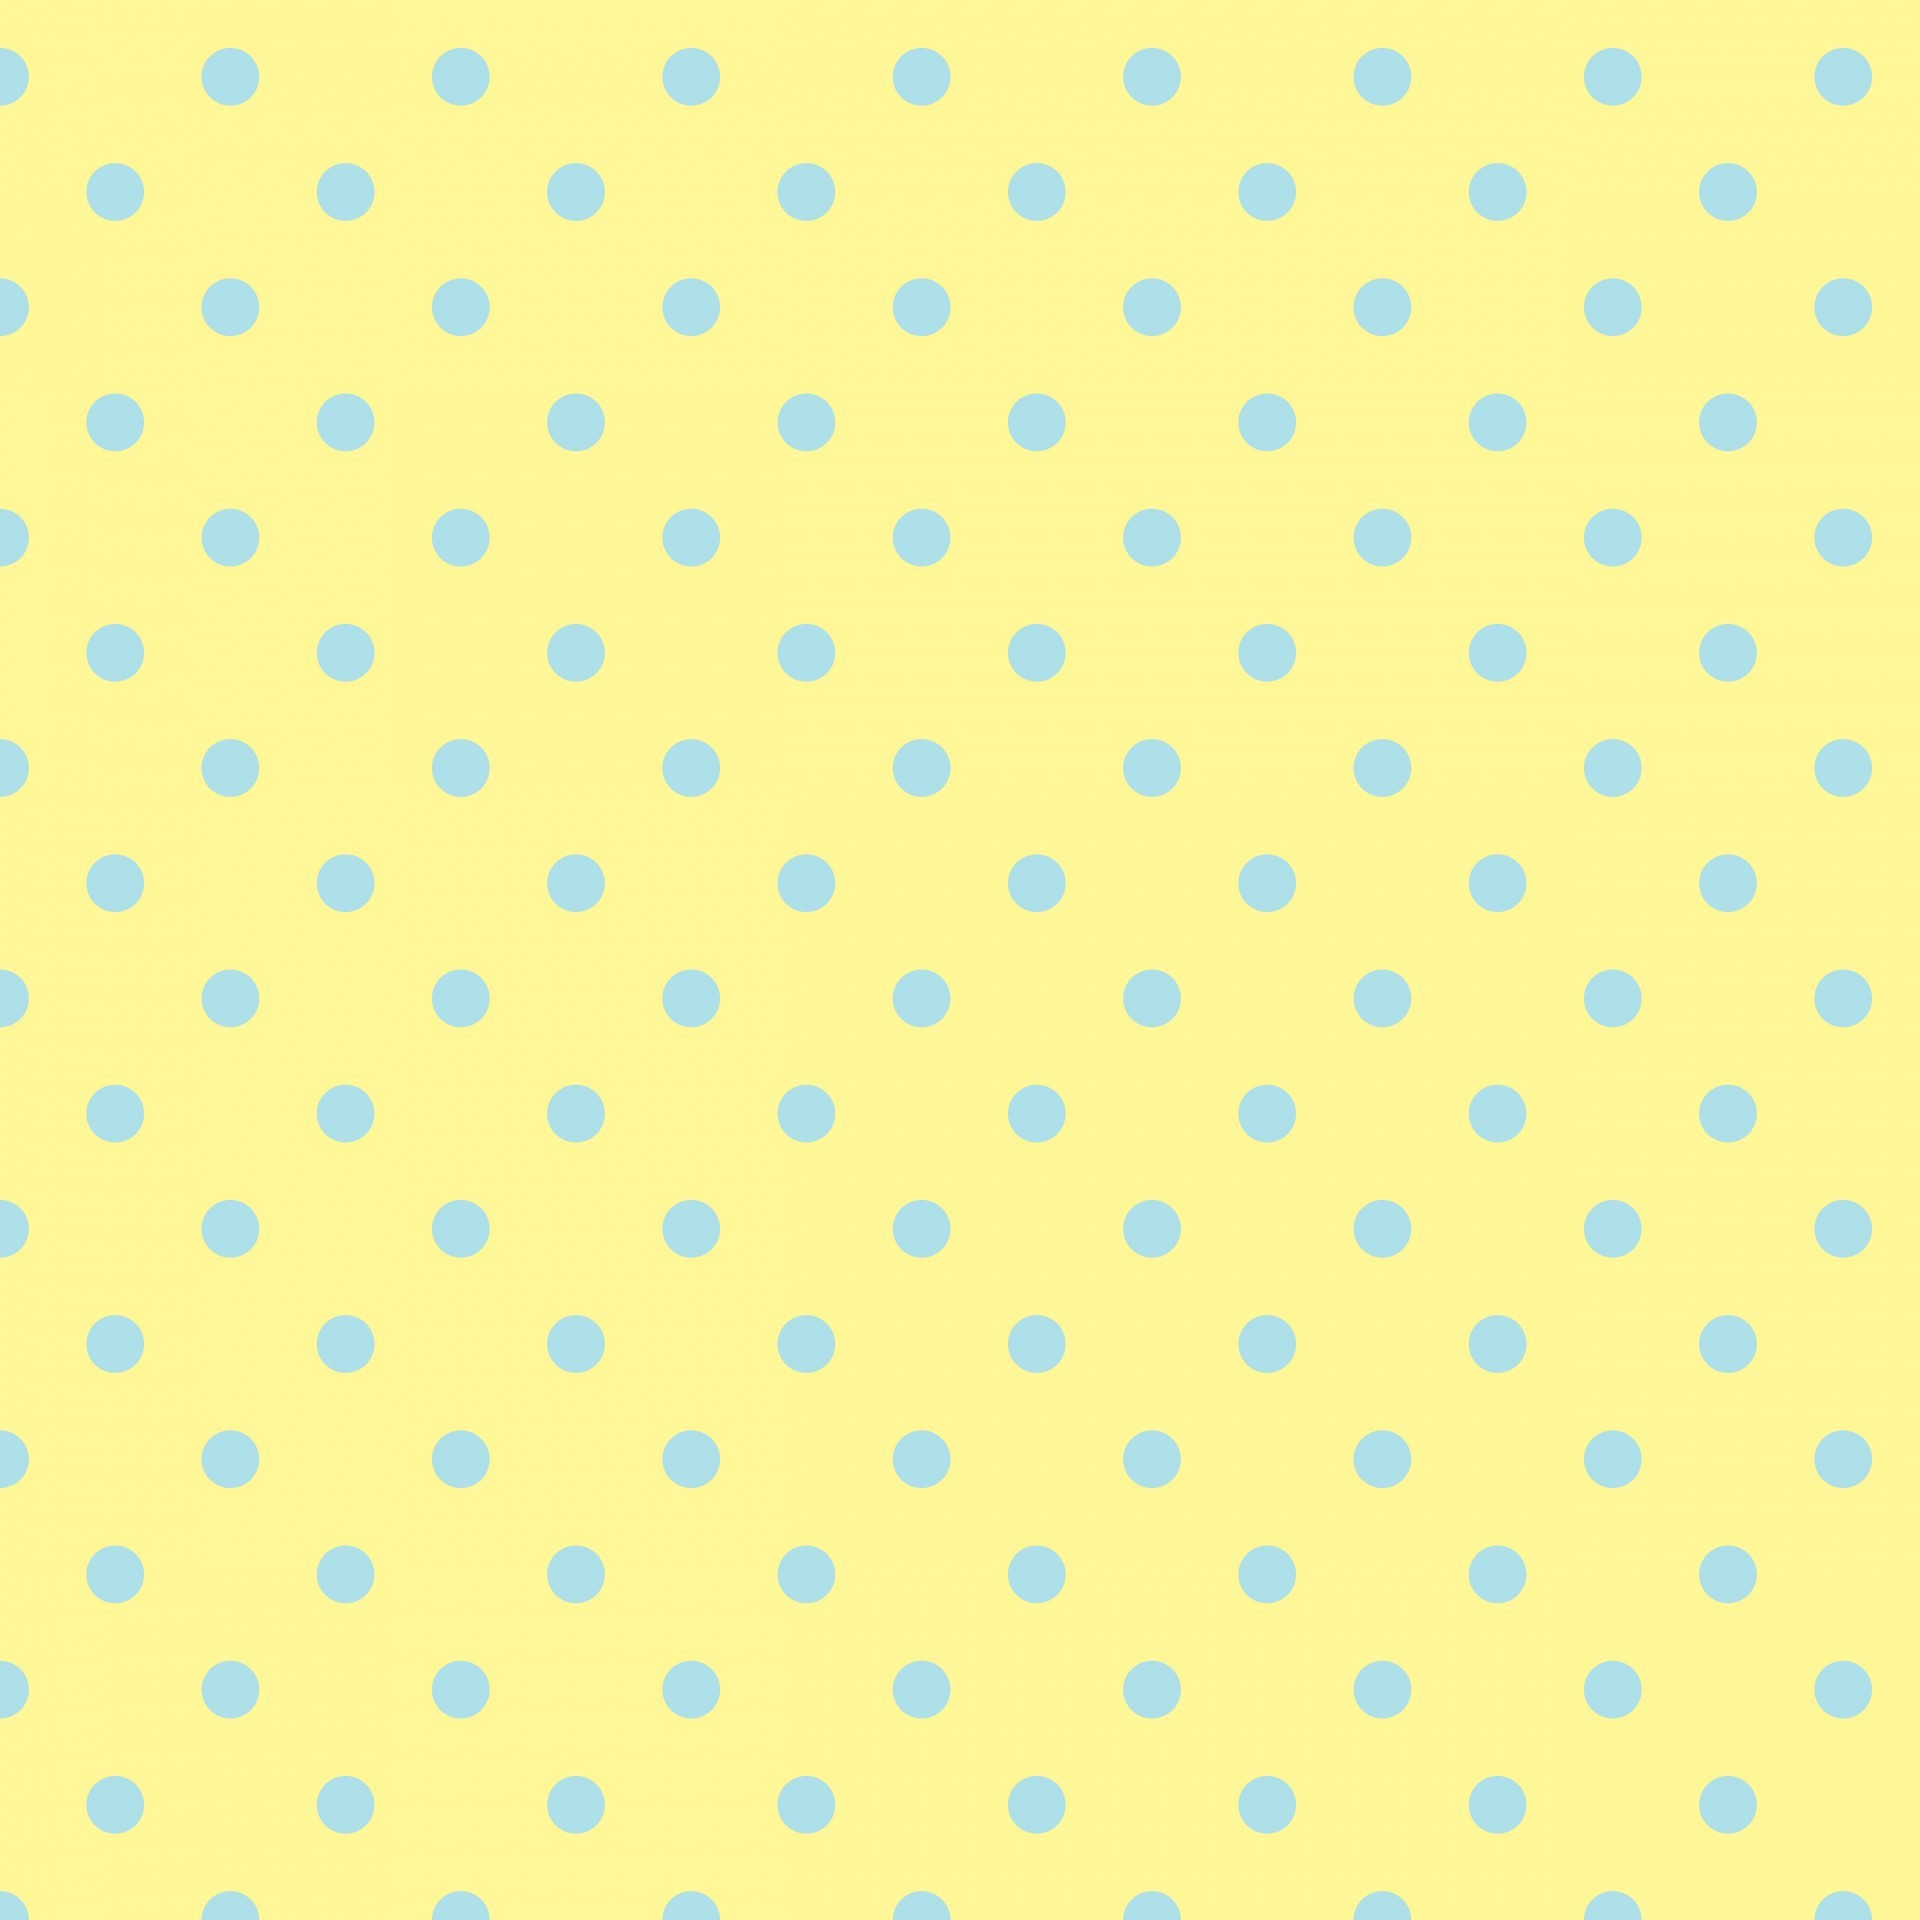 1920x1920 polka-dots-yellow-blue.jpg (1920Ã1920)